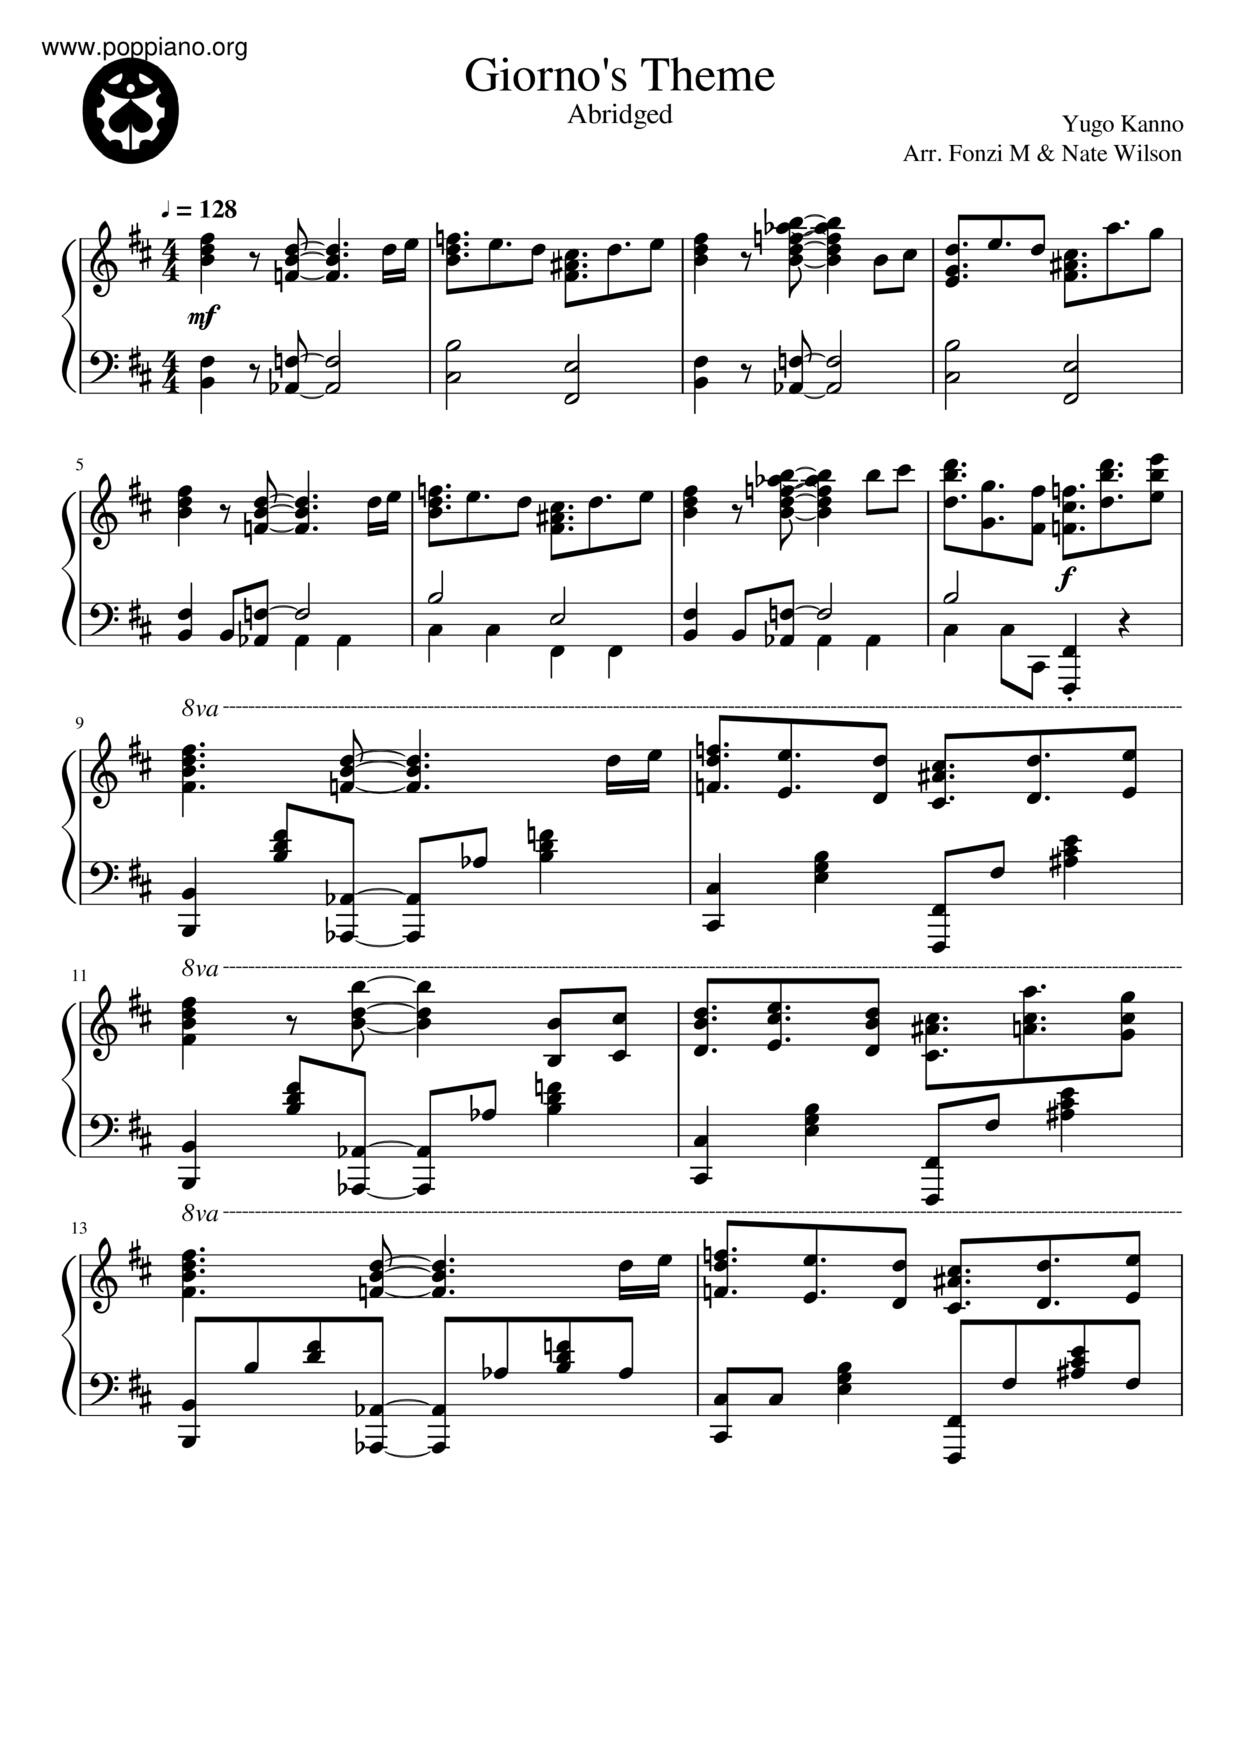 Jojo s Bizarre Adventure Golden Wind Giorno's Theme Ver 2 Sheet music for  Piano (Solo)